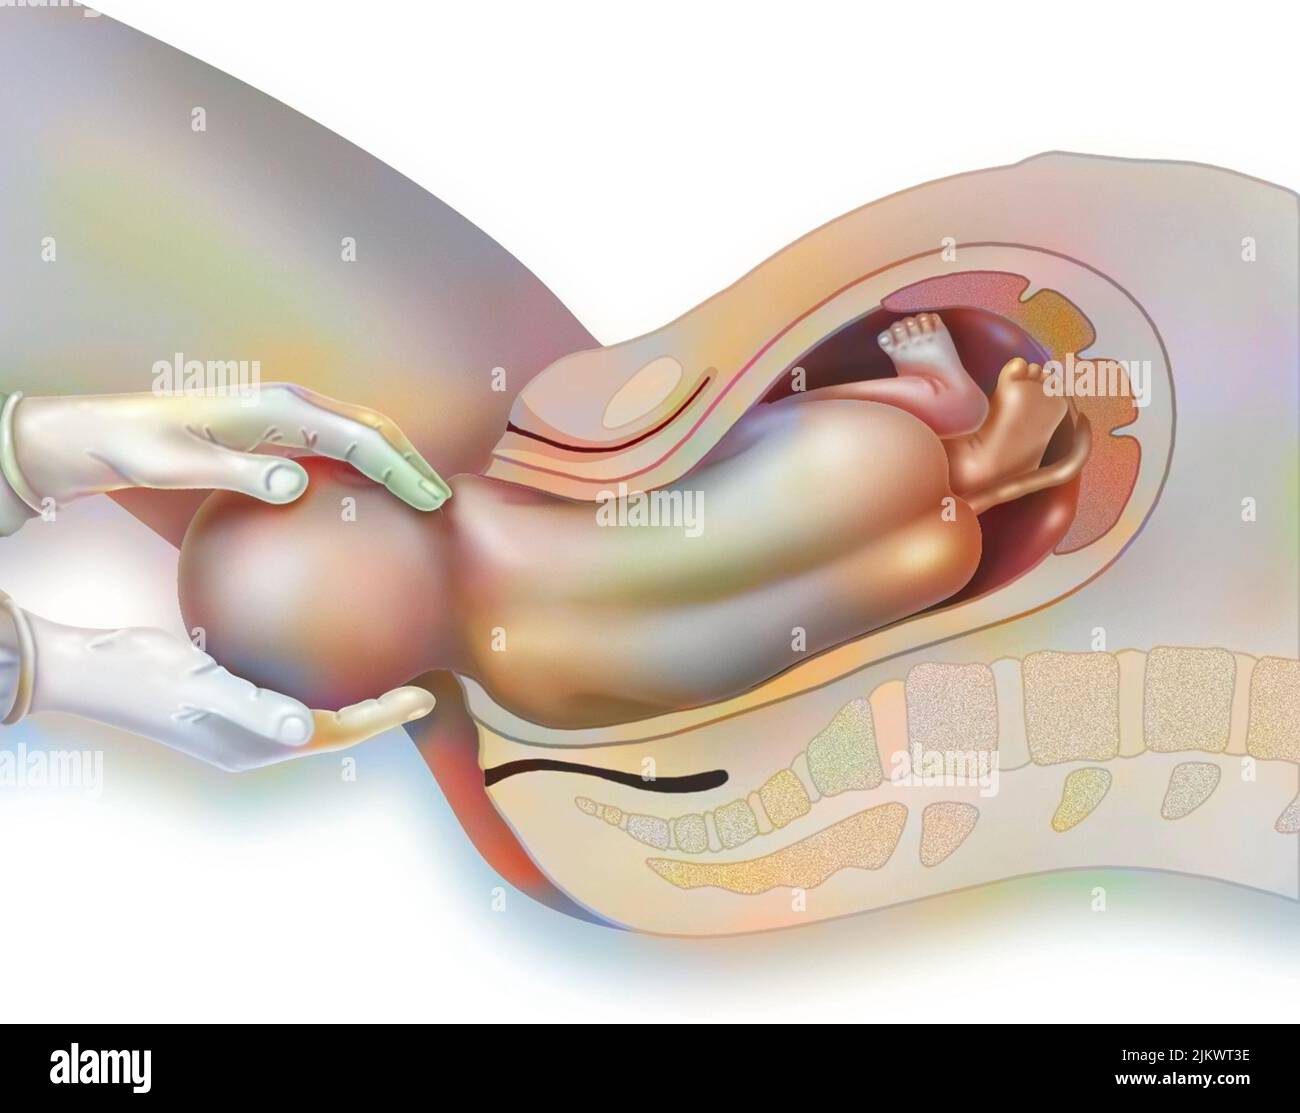 Geburt, Schritt 3: Freigabe der oberen Schulter durch die Hebamme. Stockfoto